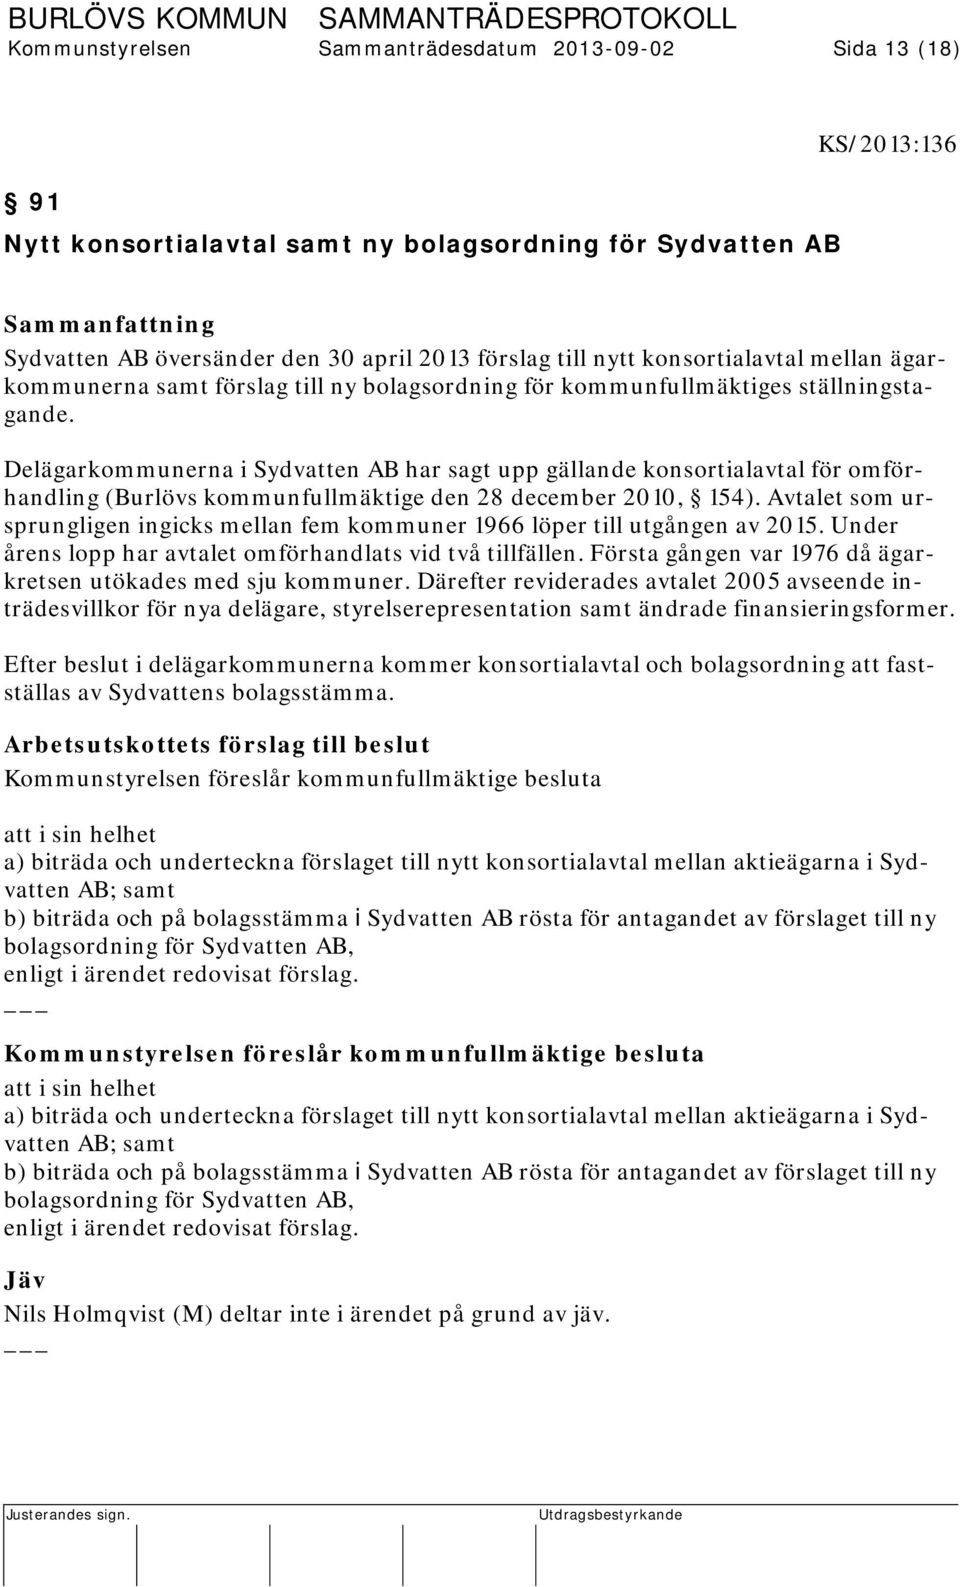 Delägarkommunerna i Sydvatten AB har sagt upp gällande konsortialavtal för omförhandling (Burlövs kommunfullmäktige den 28 december 2010, 154).